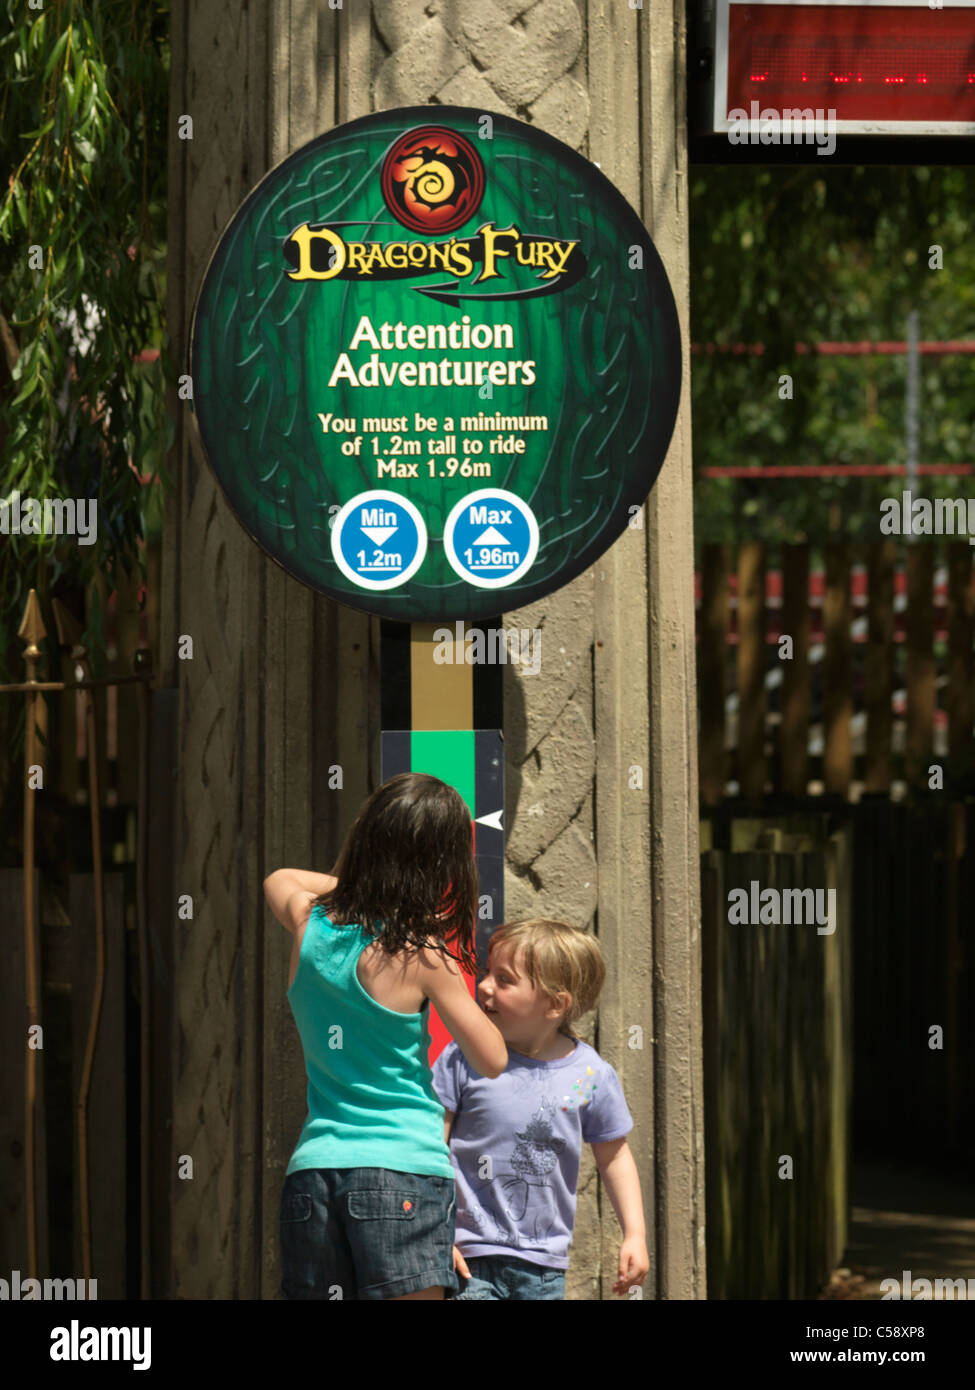 Chessington Surrey England Chessington World Of Adventures Theme Park Girls Measuring Their Height To Go On Dragon Fury Ride Stock Photo